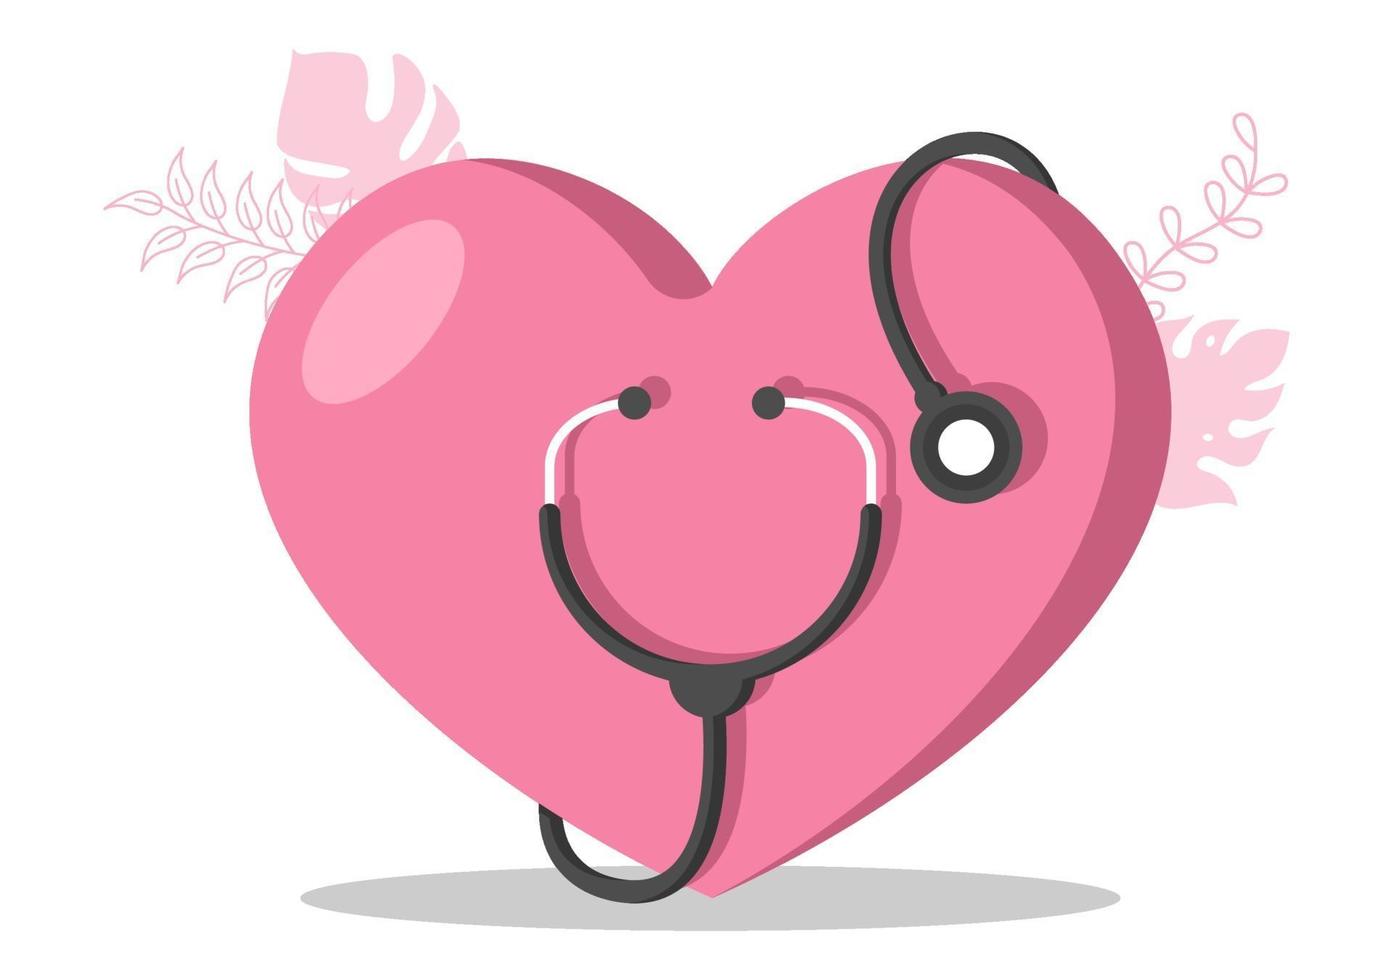 Iconos de equipos médicos y de atención médica en forma de paquete de ilustración de corazón de acción de gracias a todos los asistentes médicos por luchar contra el coronavirus y salvar muchas vidas vector